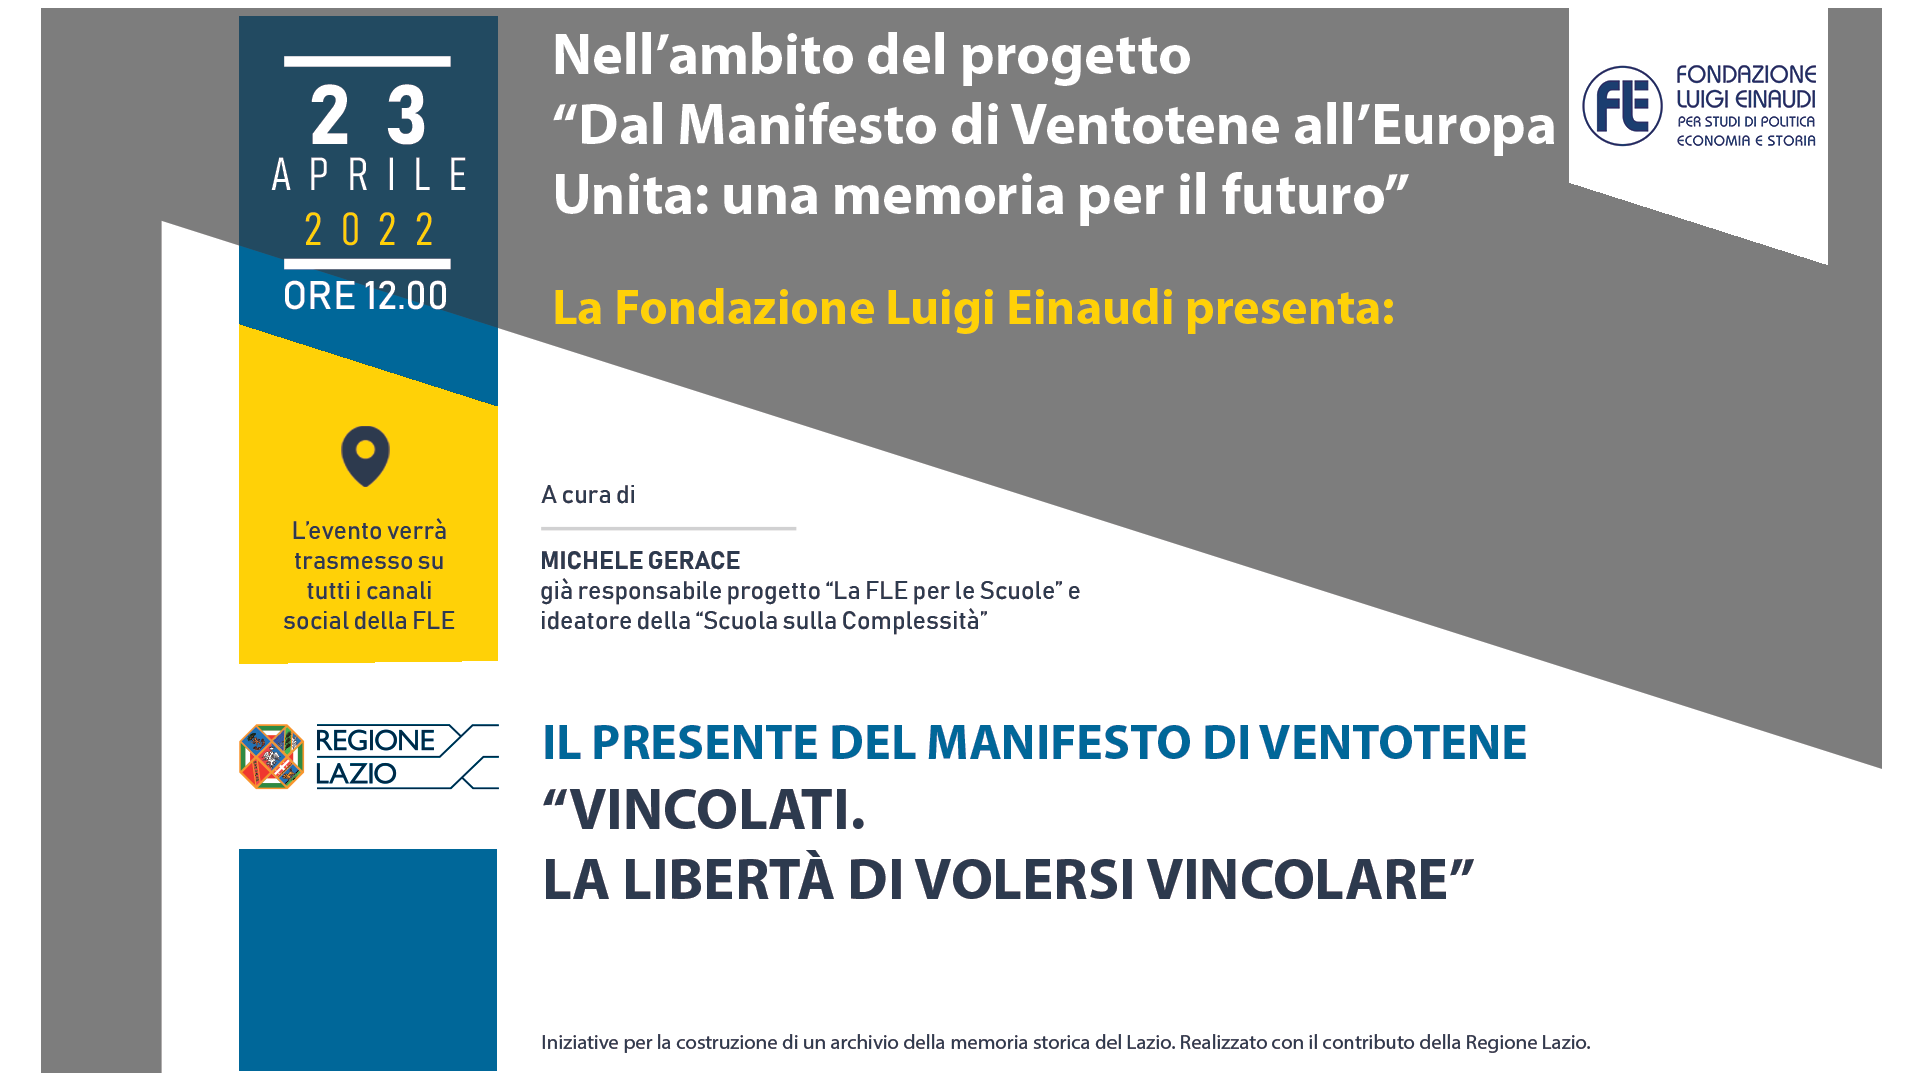 Dal Manifesto di Ventotene all’Europa Unita: una Memoria per il futuro – Vincolati. La libertà di volersi vincolare